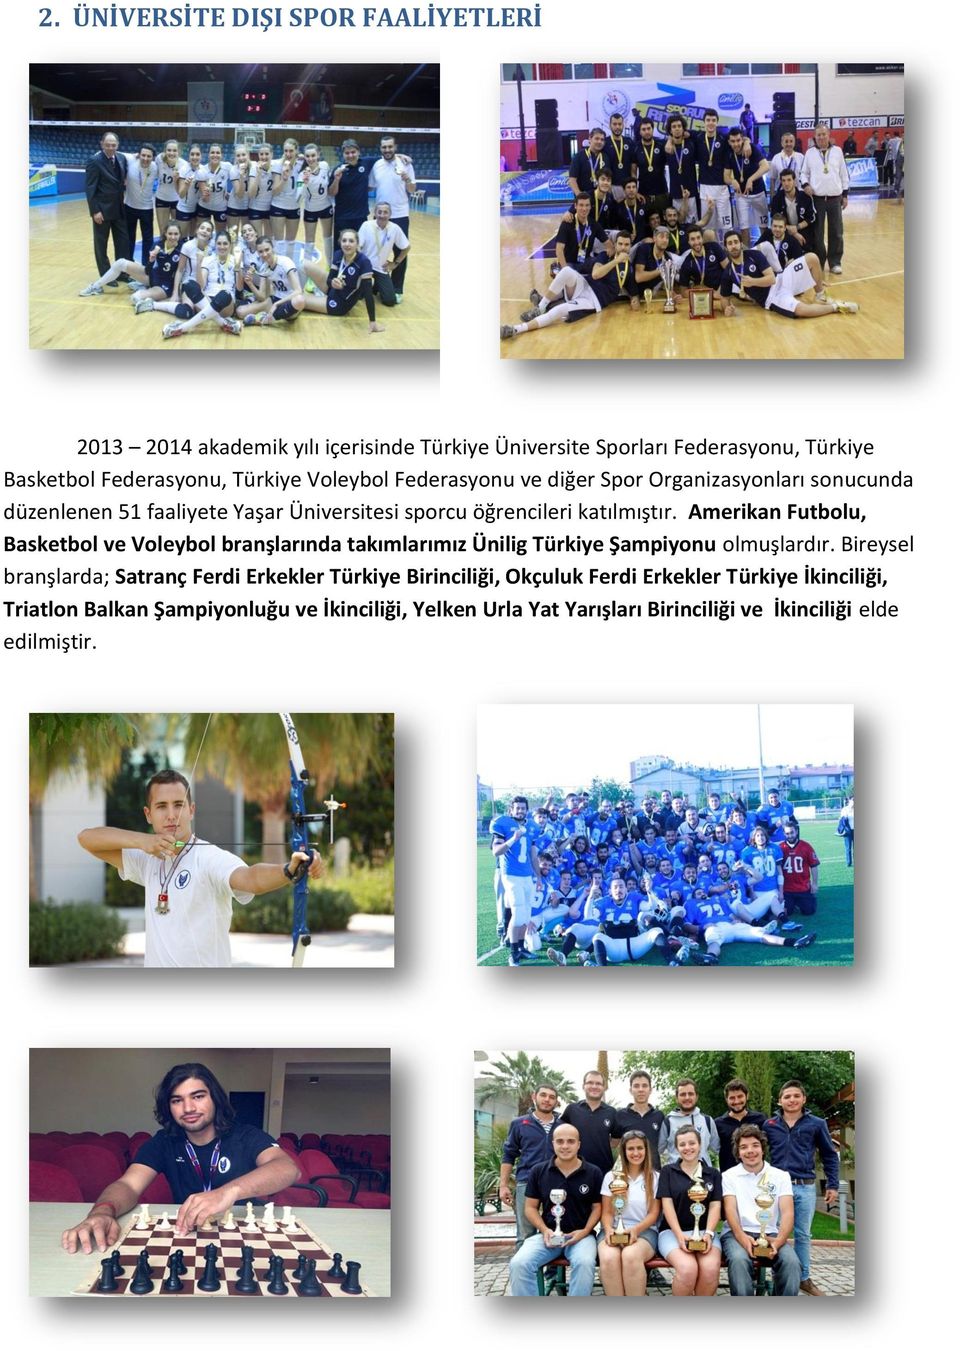 Amerikan Futbolu, Basketbol ve Voleybol branşlarında takımlarımız Ünilig Türkiye Şampiyonu olmuşlardır.